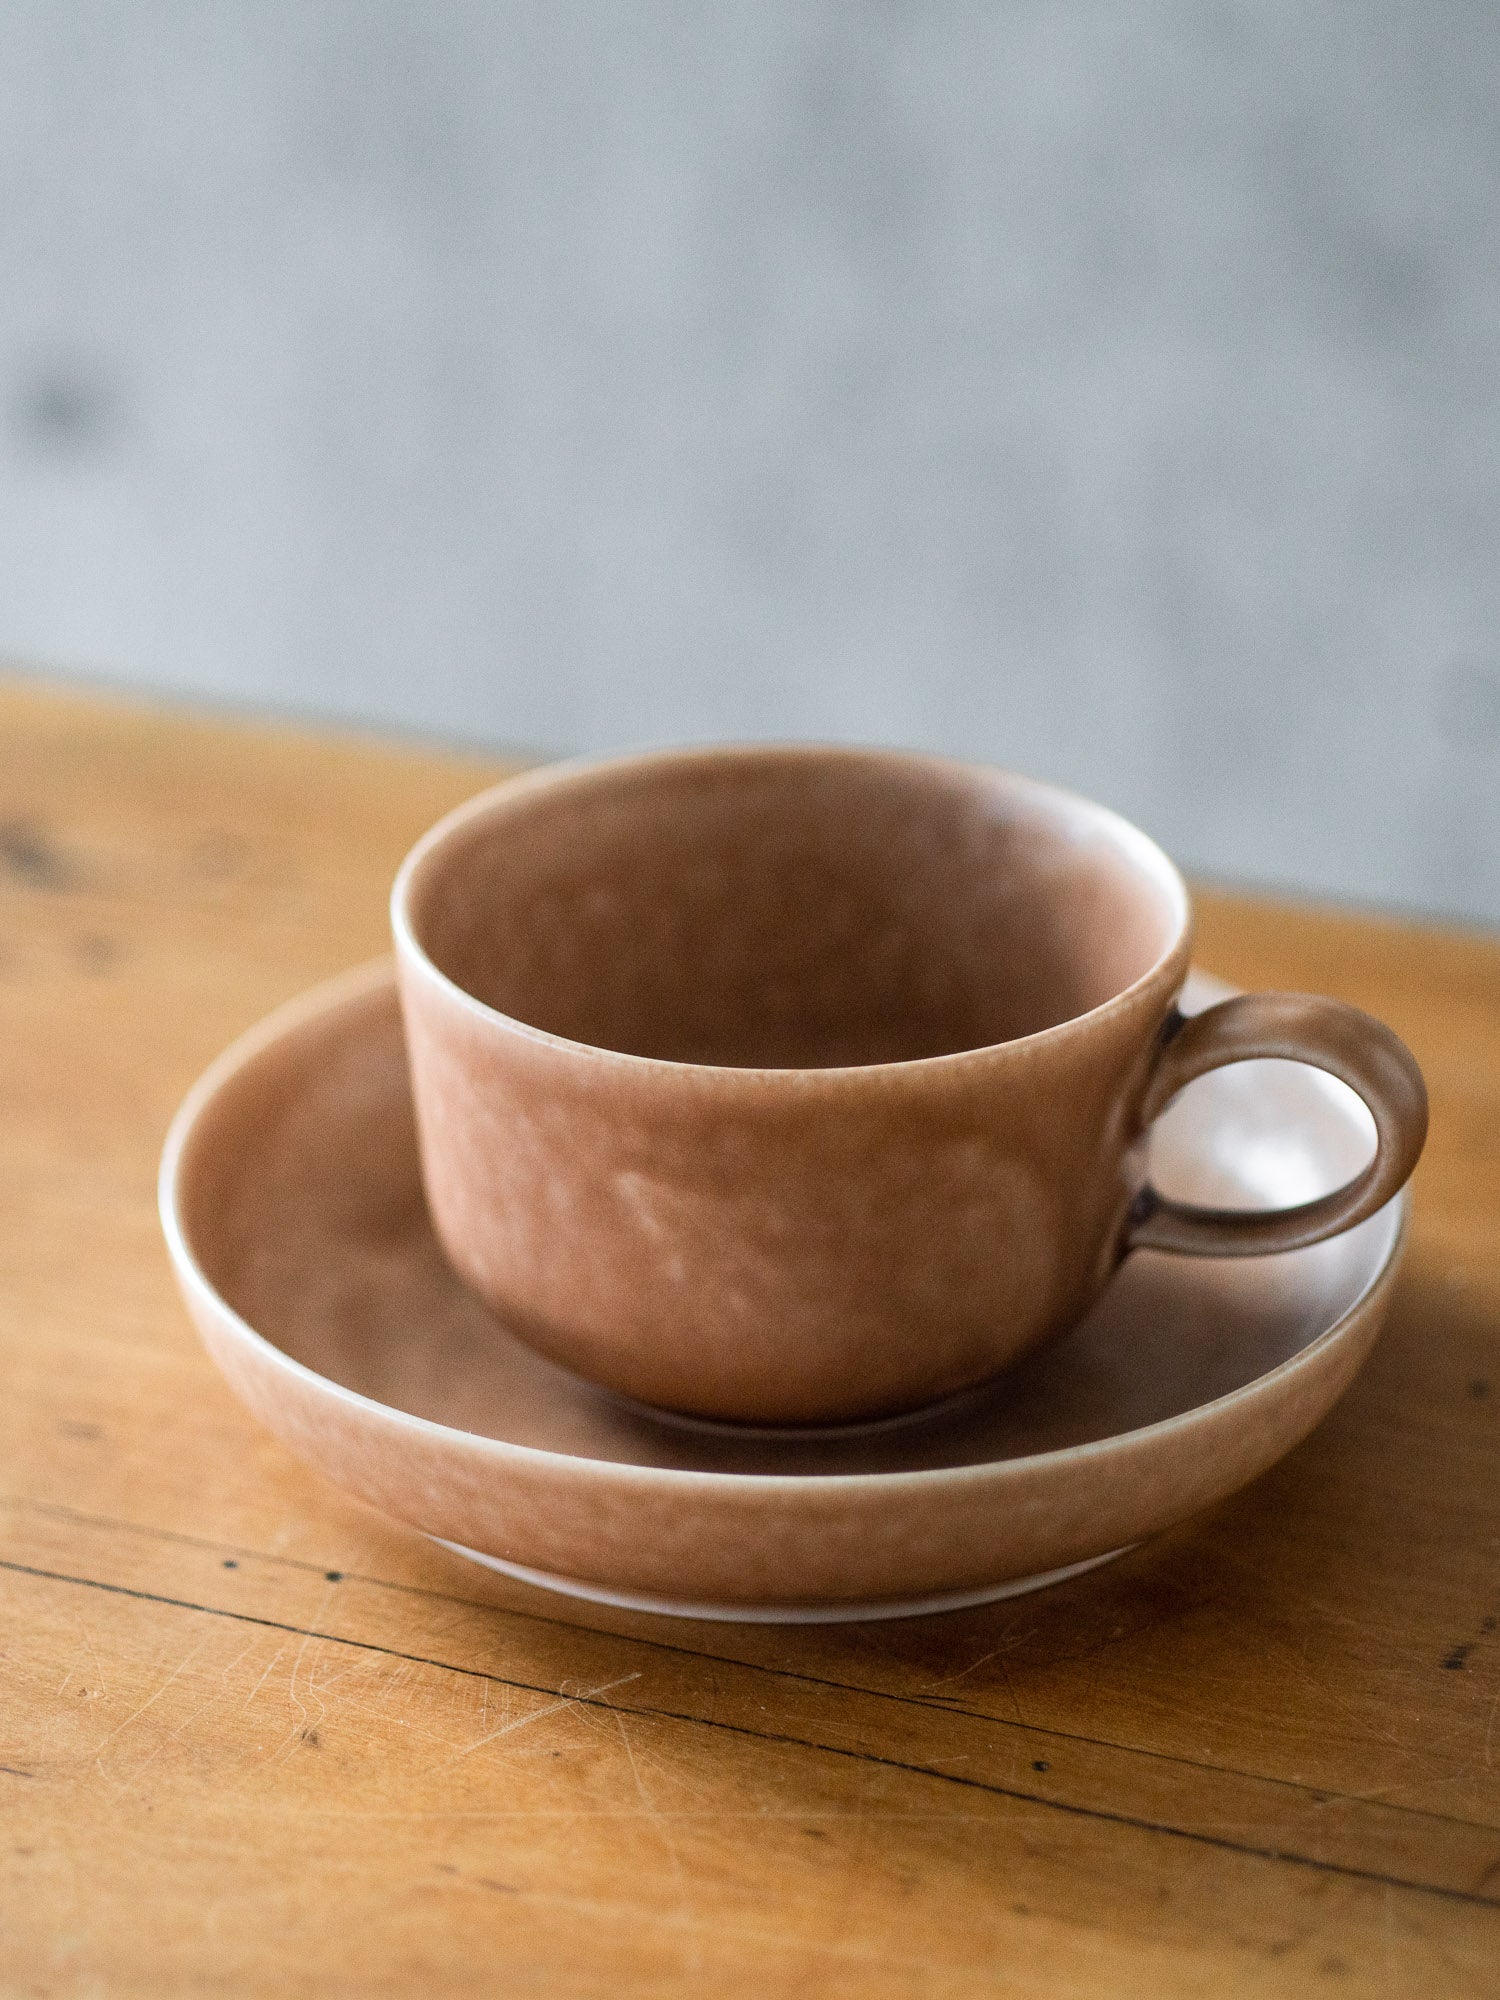 ReIRABO Cup – Warm Soil Brown